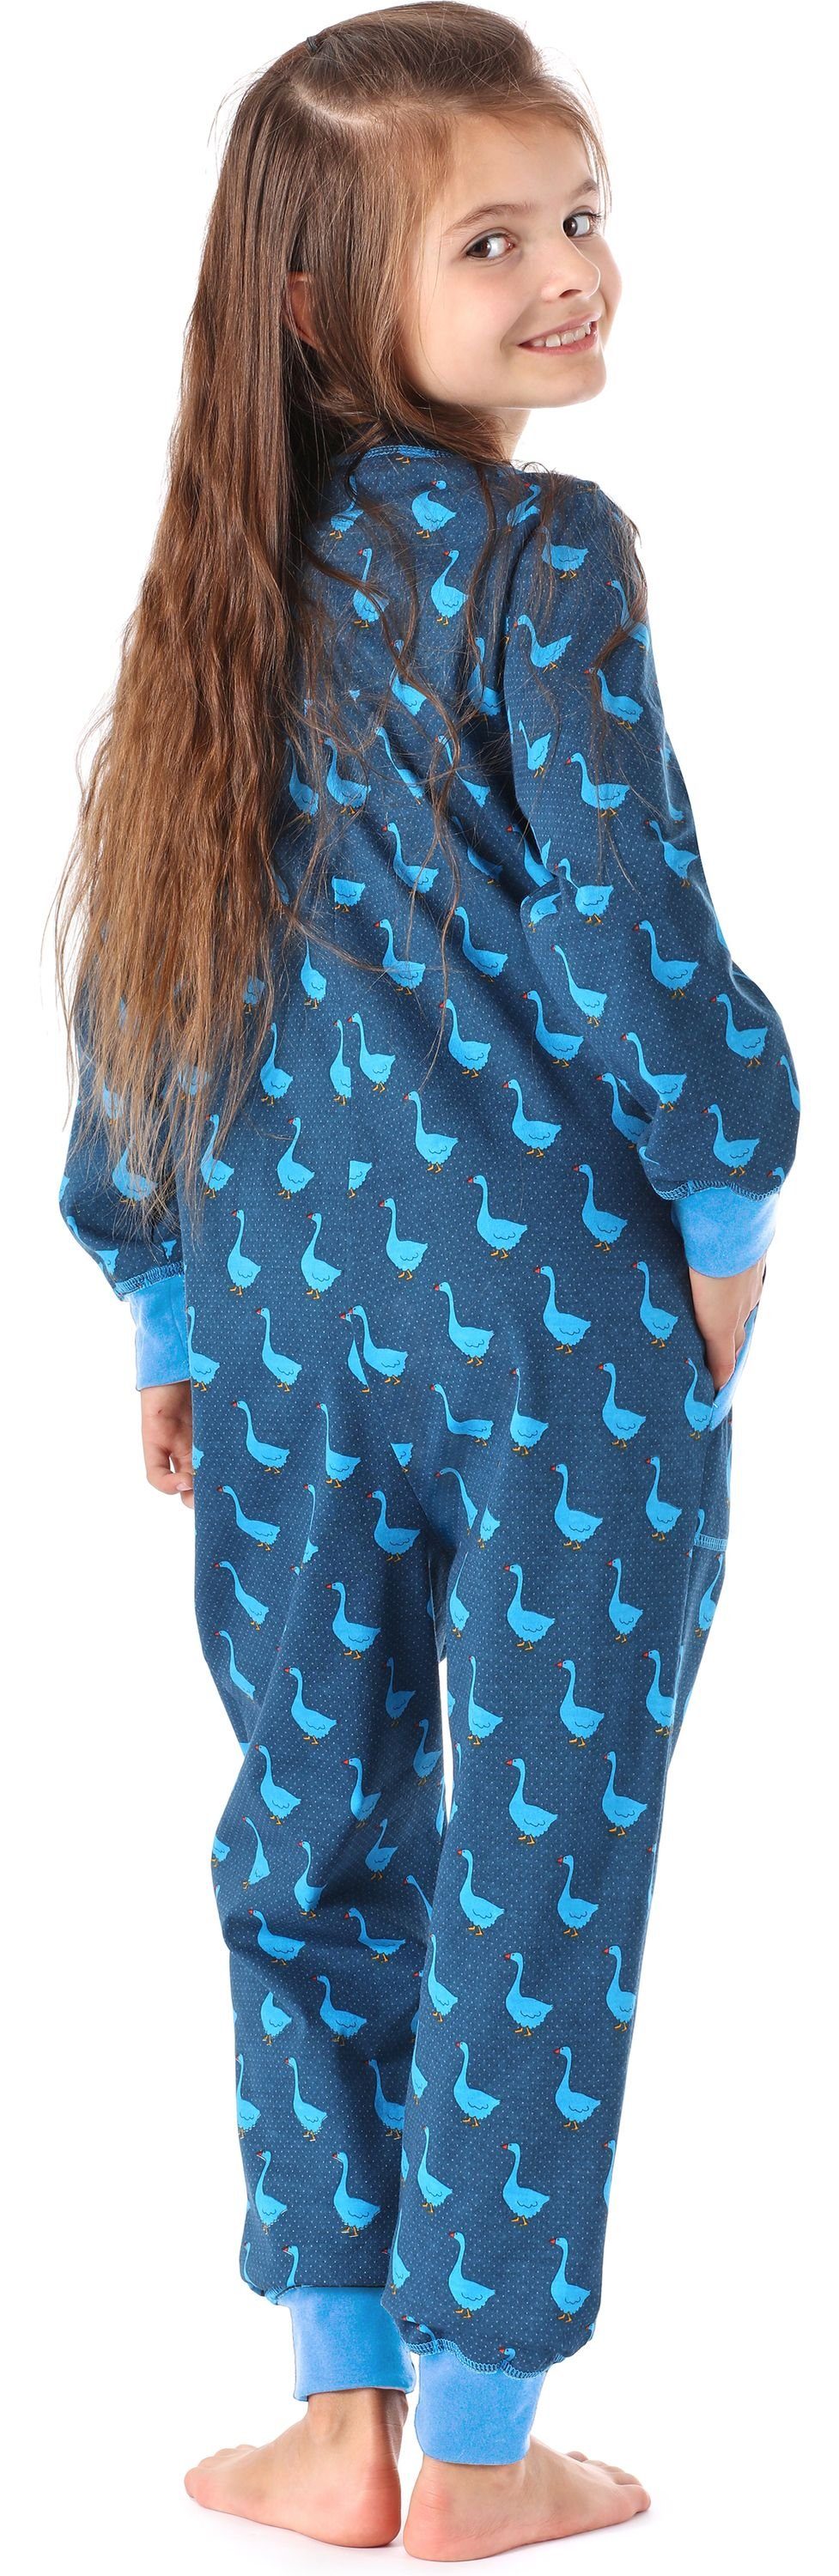 Mädchen Schlafanzug MS10-186 Jumpsuit Schlafanzug Gans Blau Merry Style